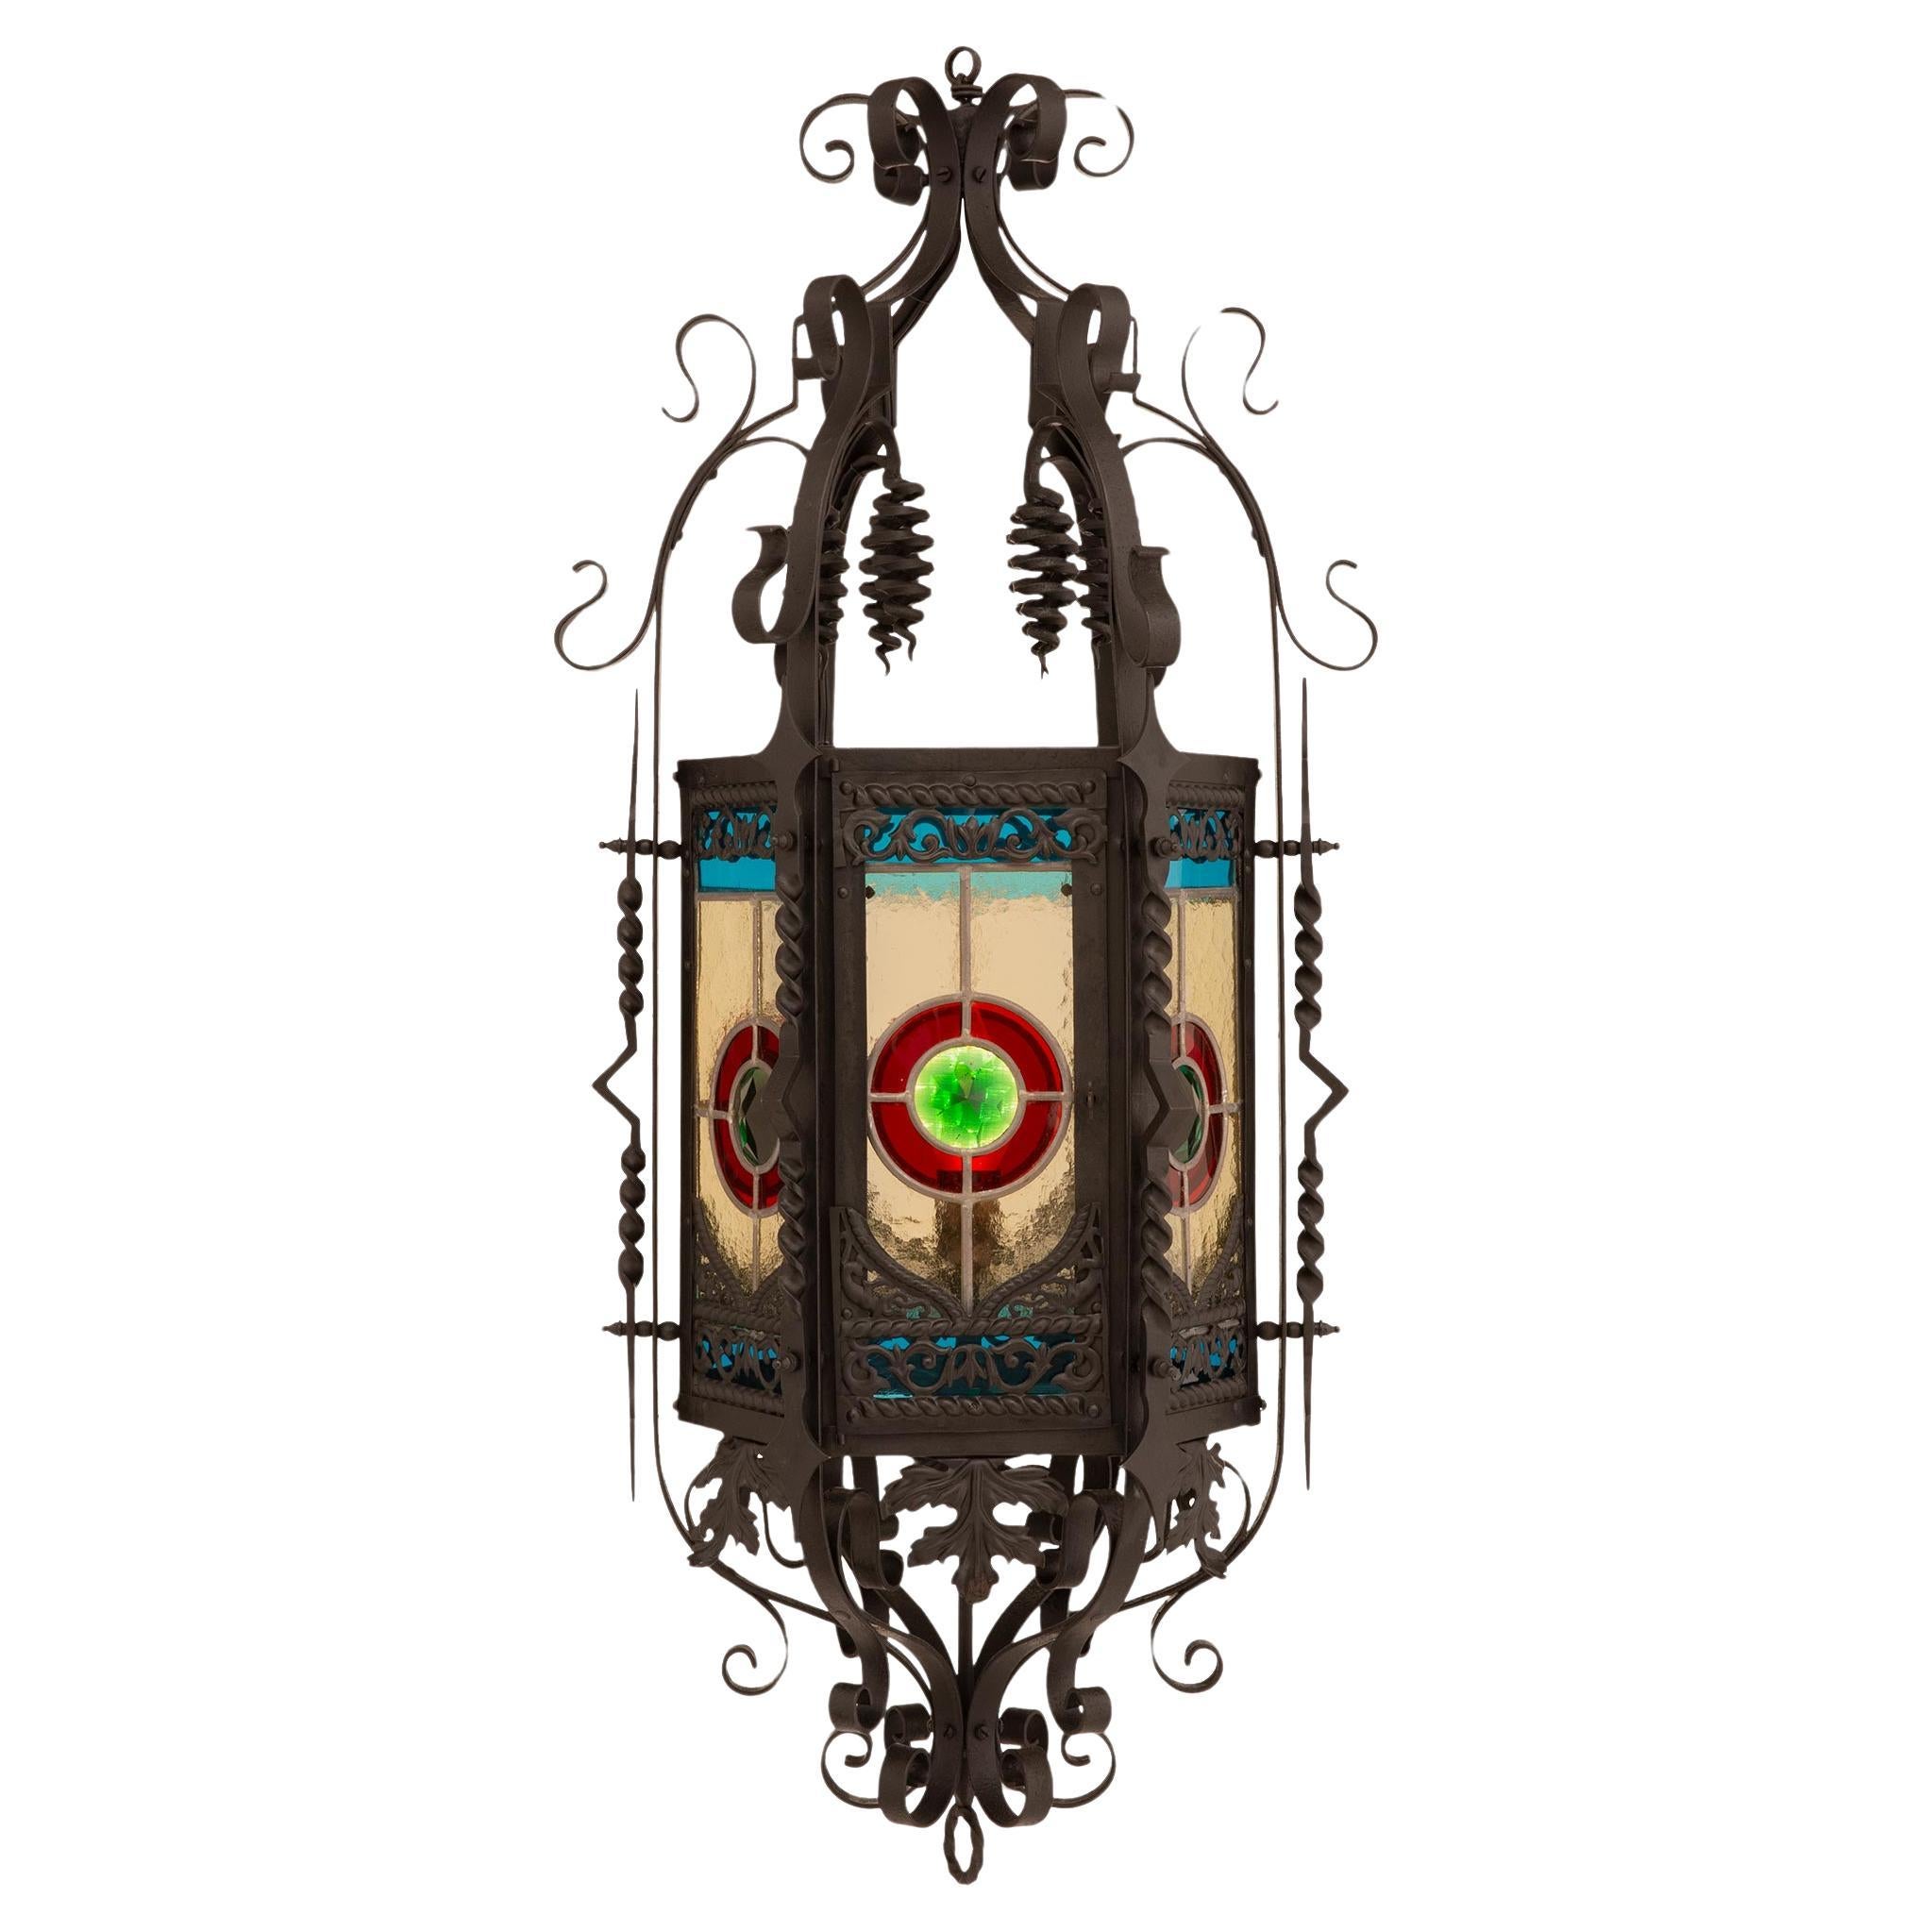 Lanterne en fer forgé et vitrail de style Renaissance du 19ème siècle.